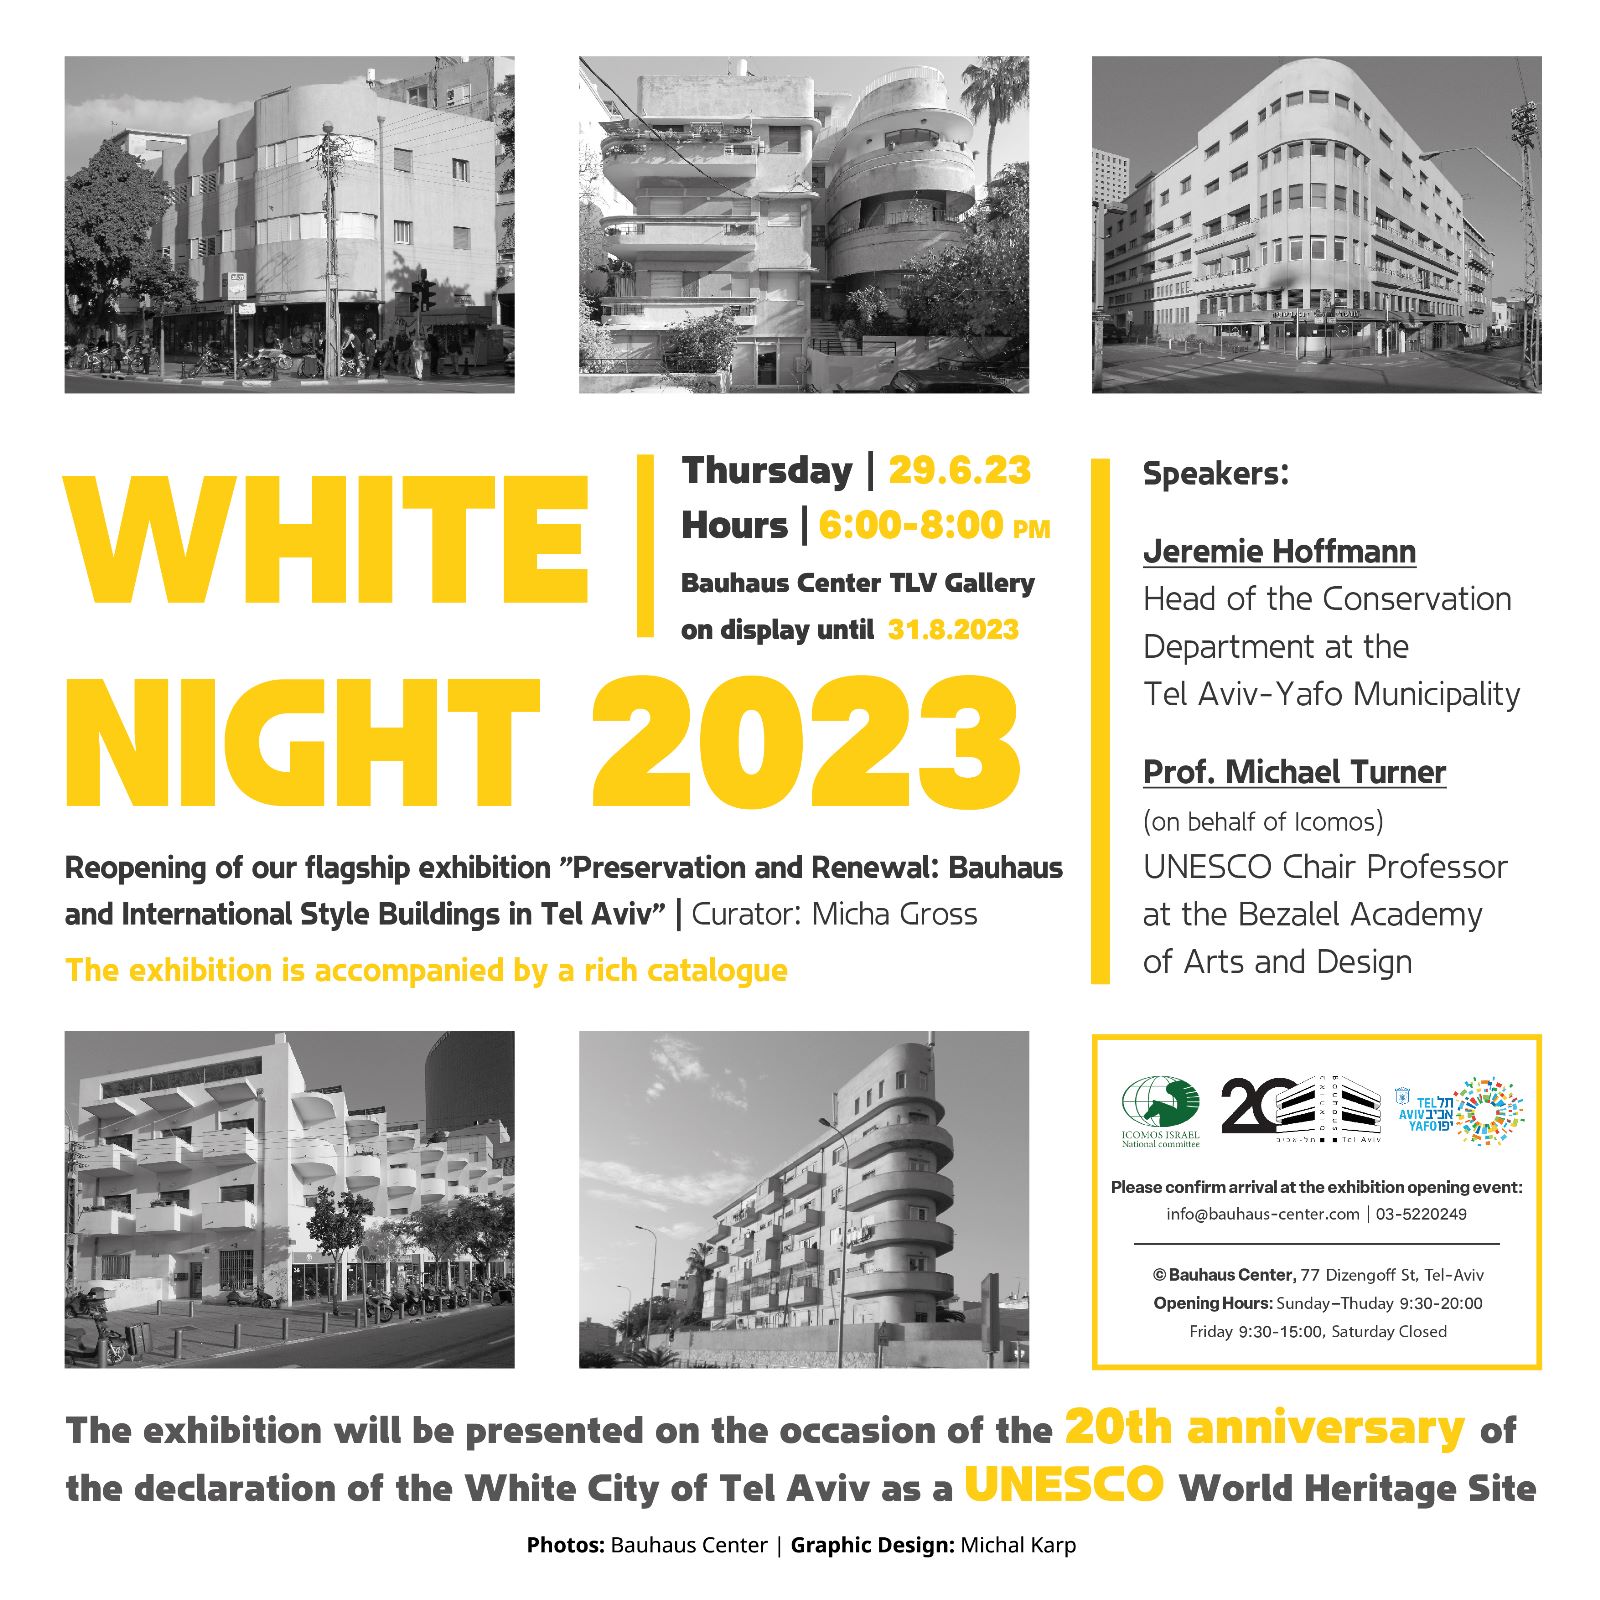 Showing Now | White Night 2023 at Bauhaus Center Tel Aviv!